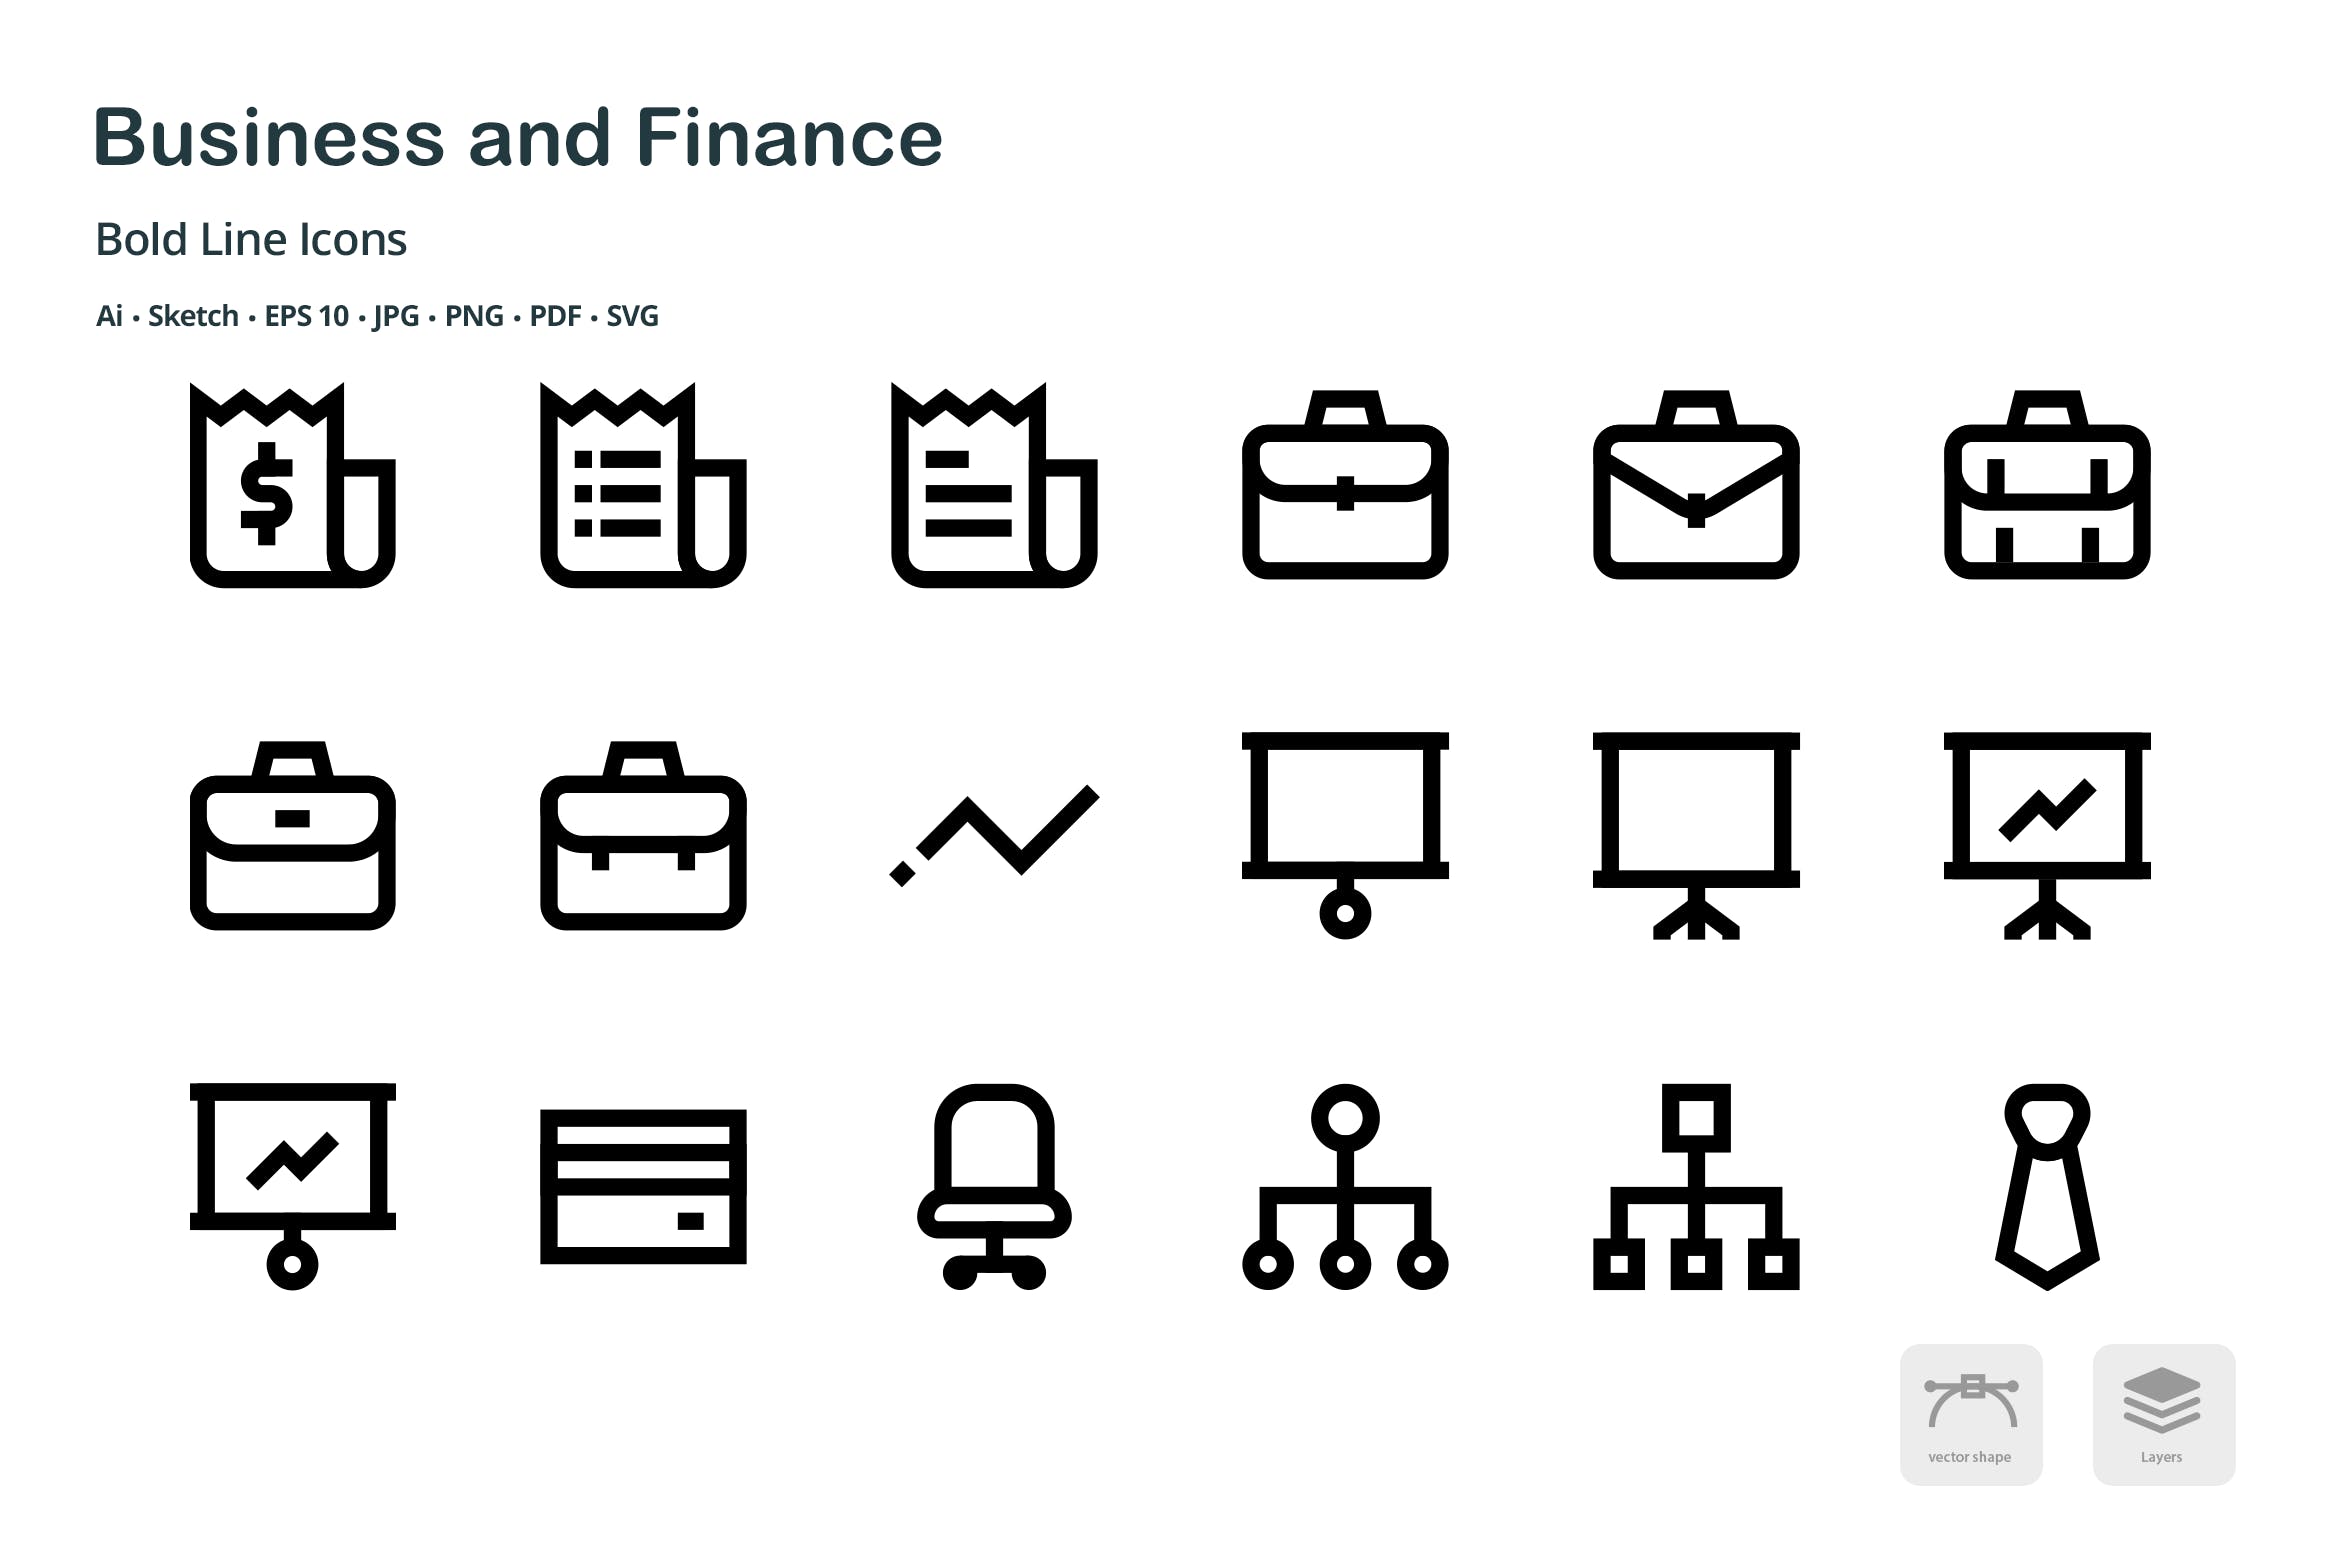 商业&金融主题粗线条风格矢量蚂蚁素材精选图标 Business and Finance Mini Bold Line Icons插图